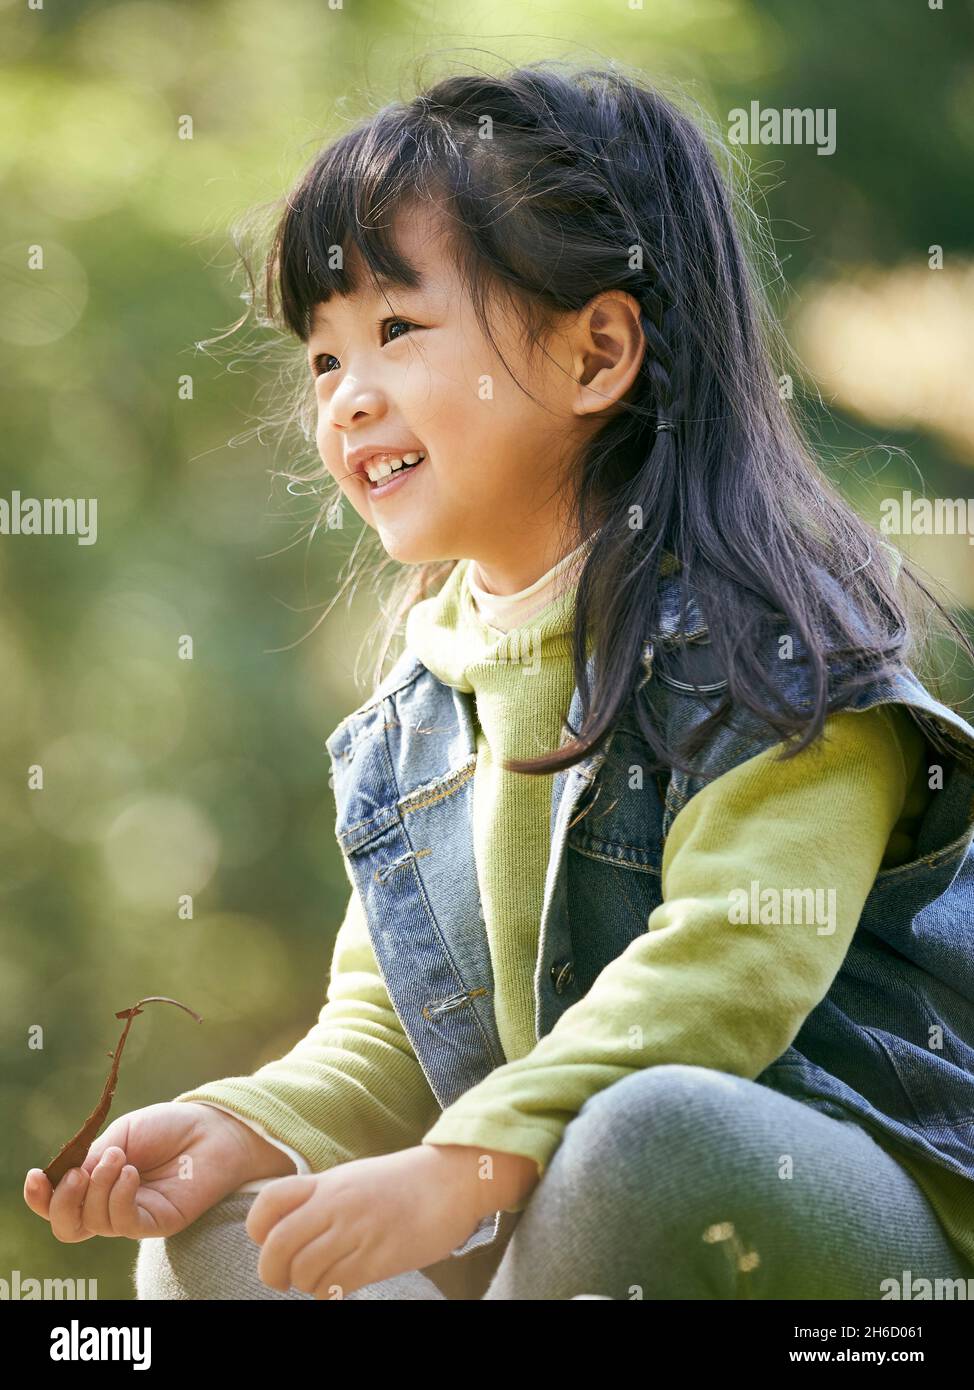 portrait extérieur d'une petite fille asiatique assise sur l'herbe heureuse et souriante Banque D'Images